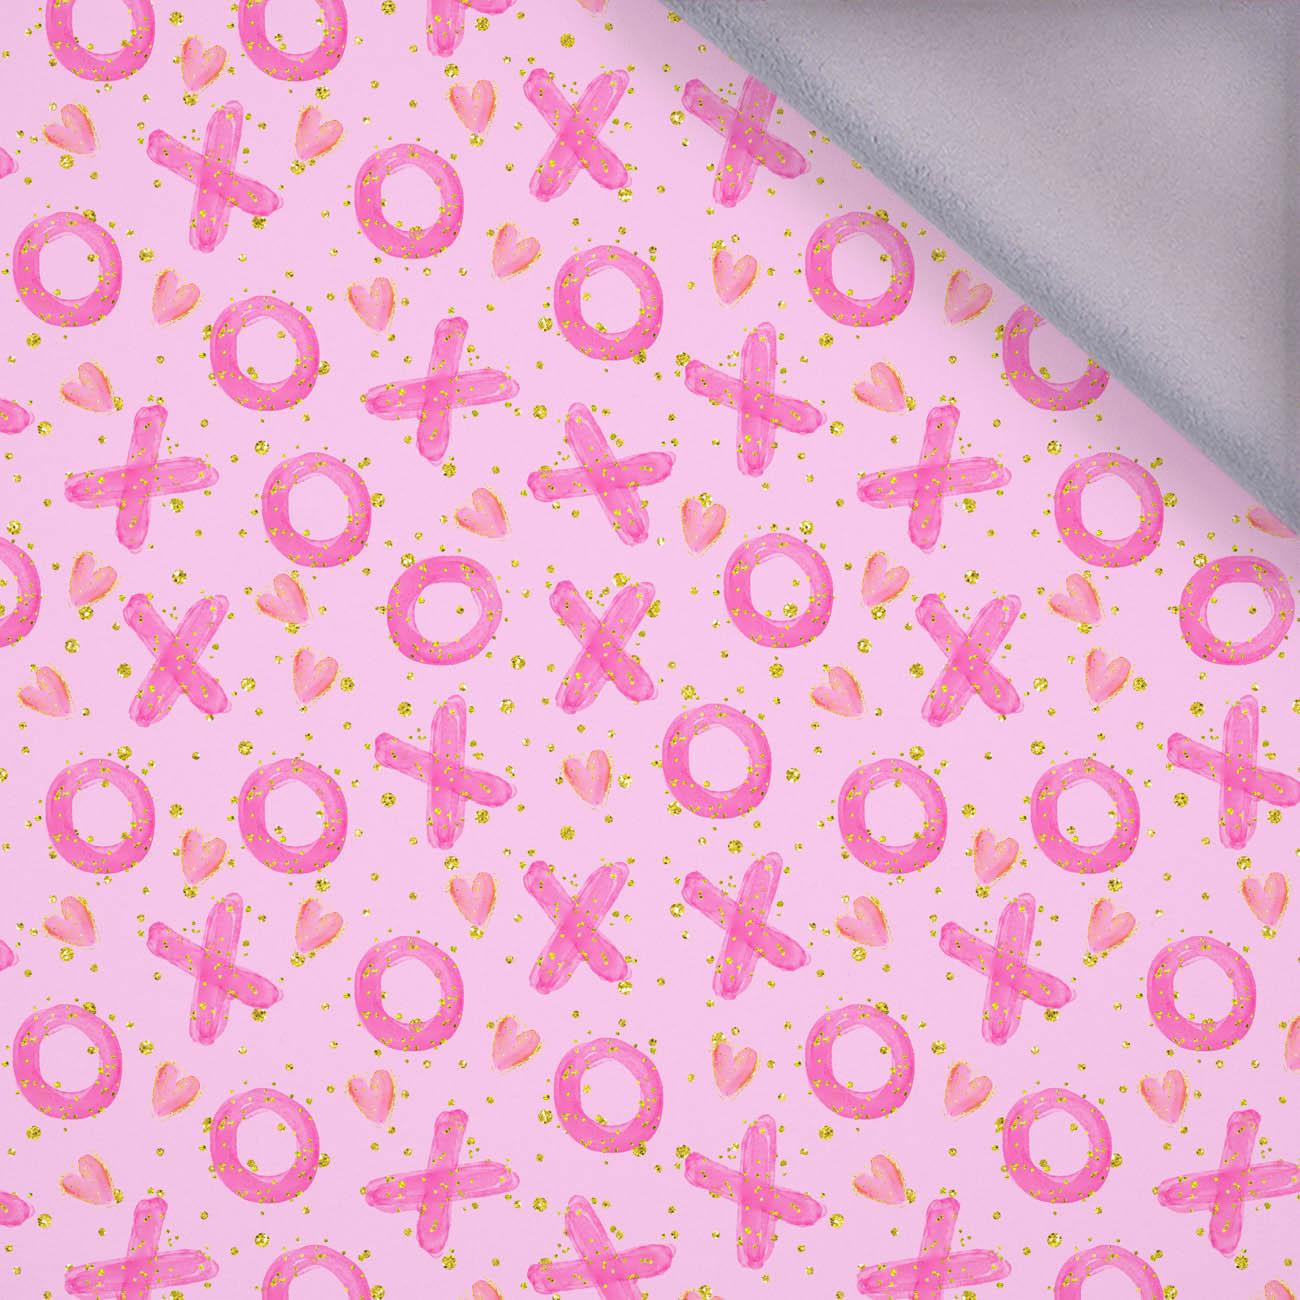 XOXO pat. 2 / pink - softshell